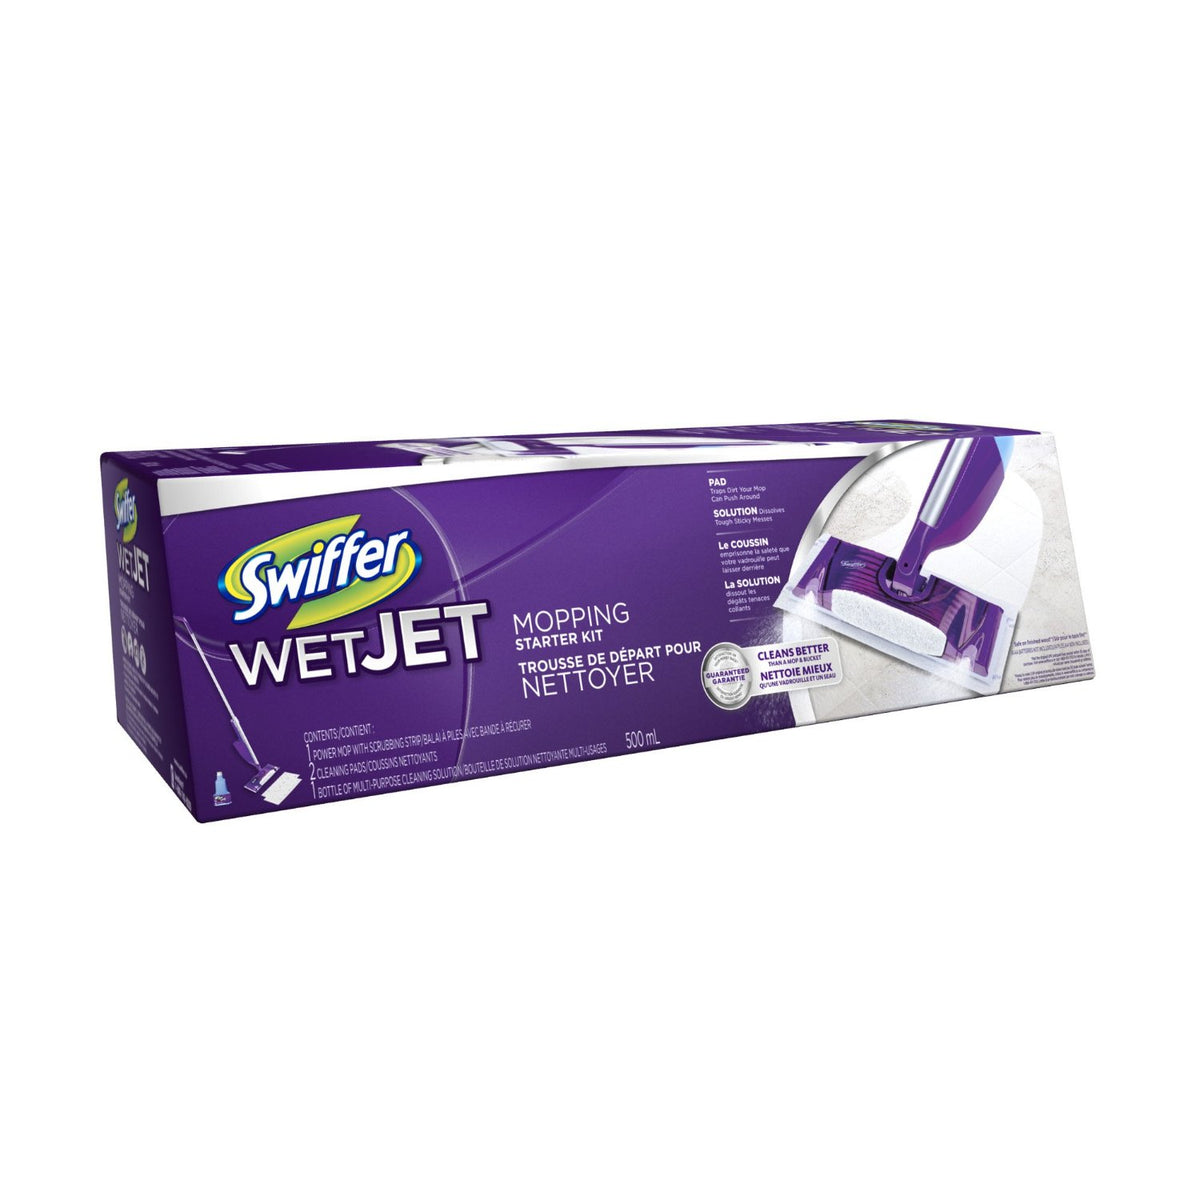 Swiffer 92811 Wet Jet Mopping Starter Kit